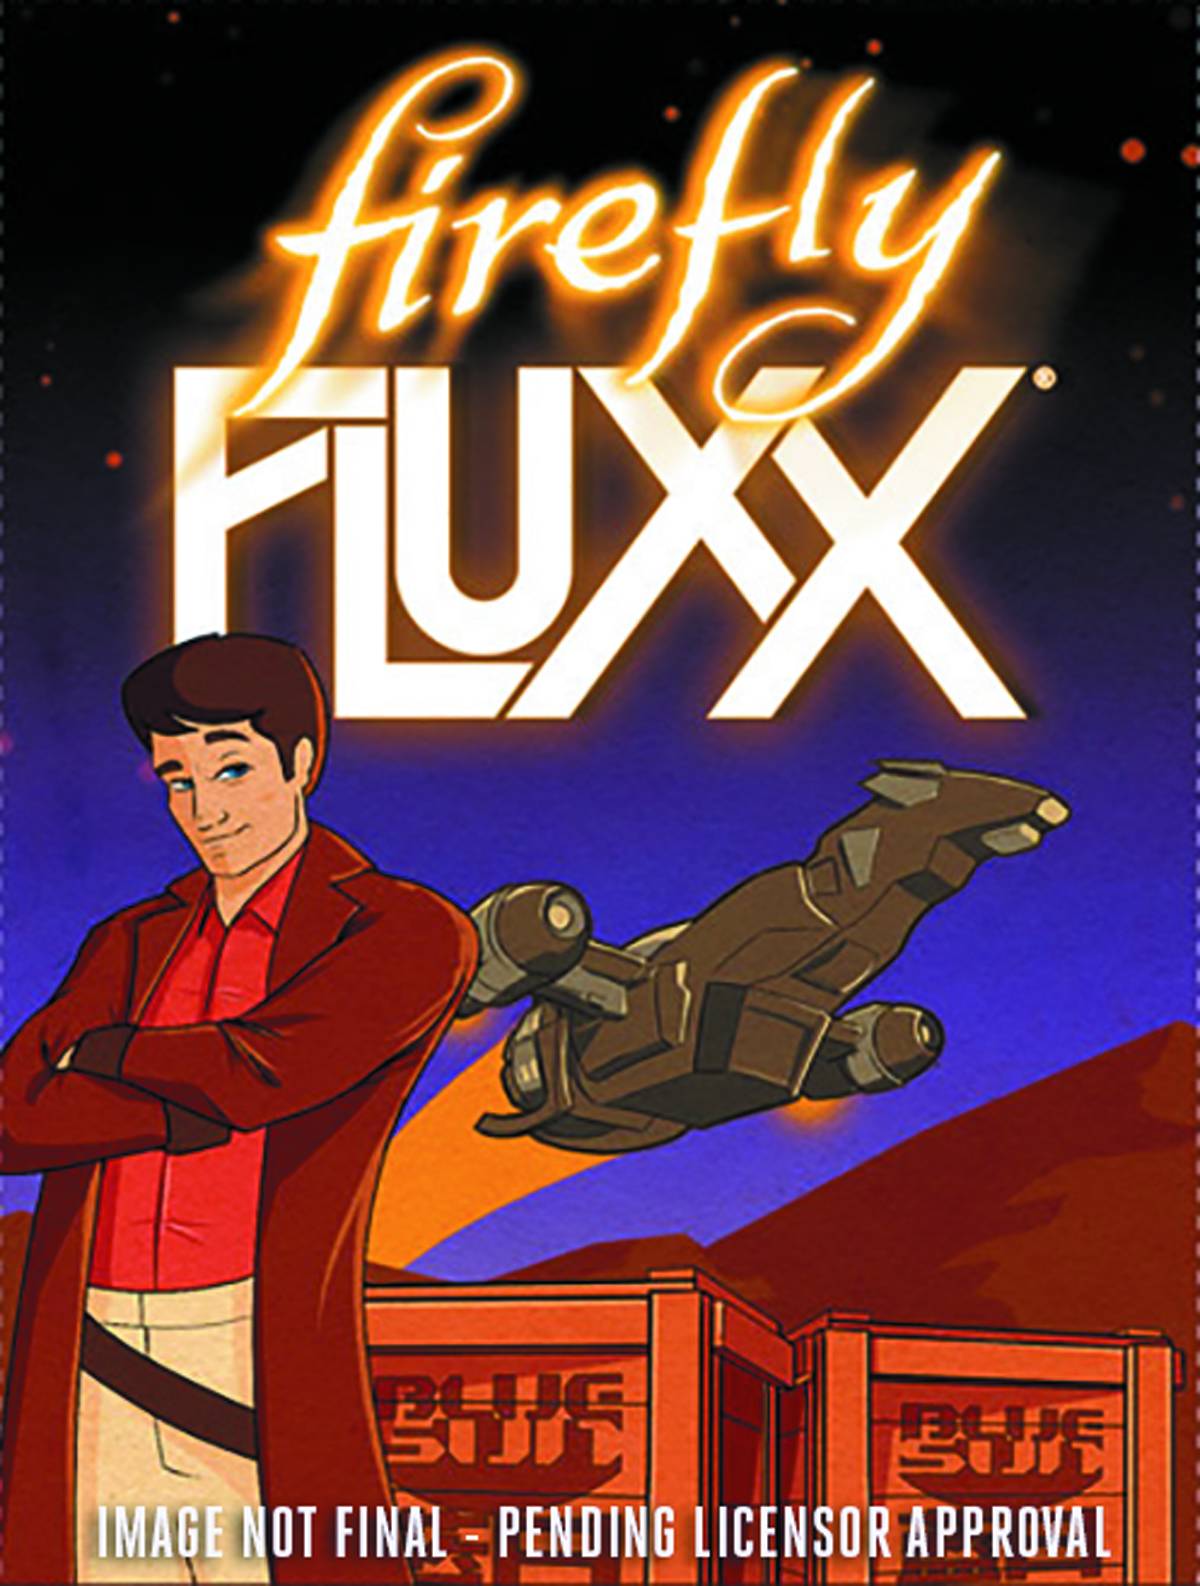 Fluxx - Firefly Fluxx Card Game